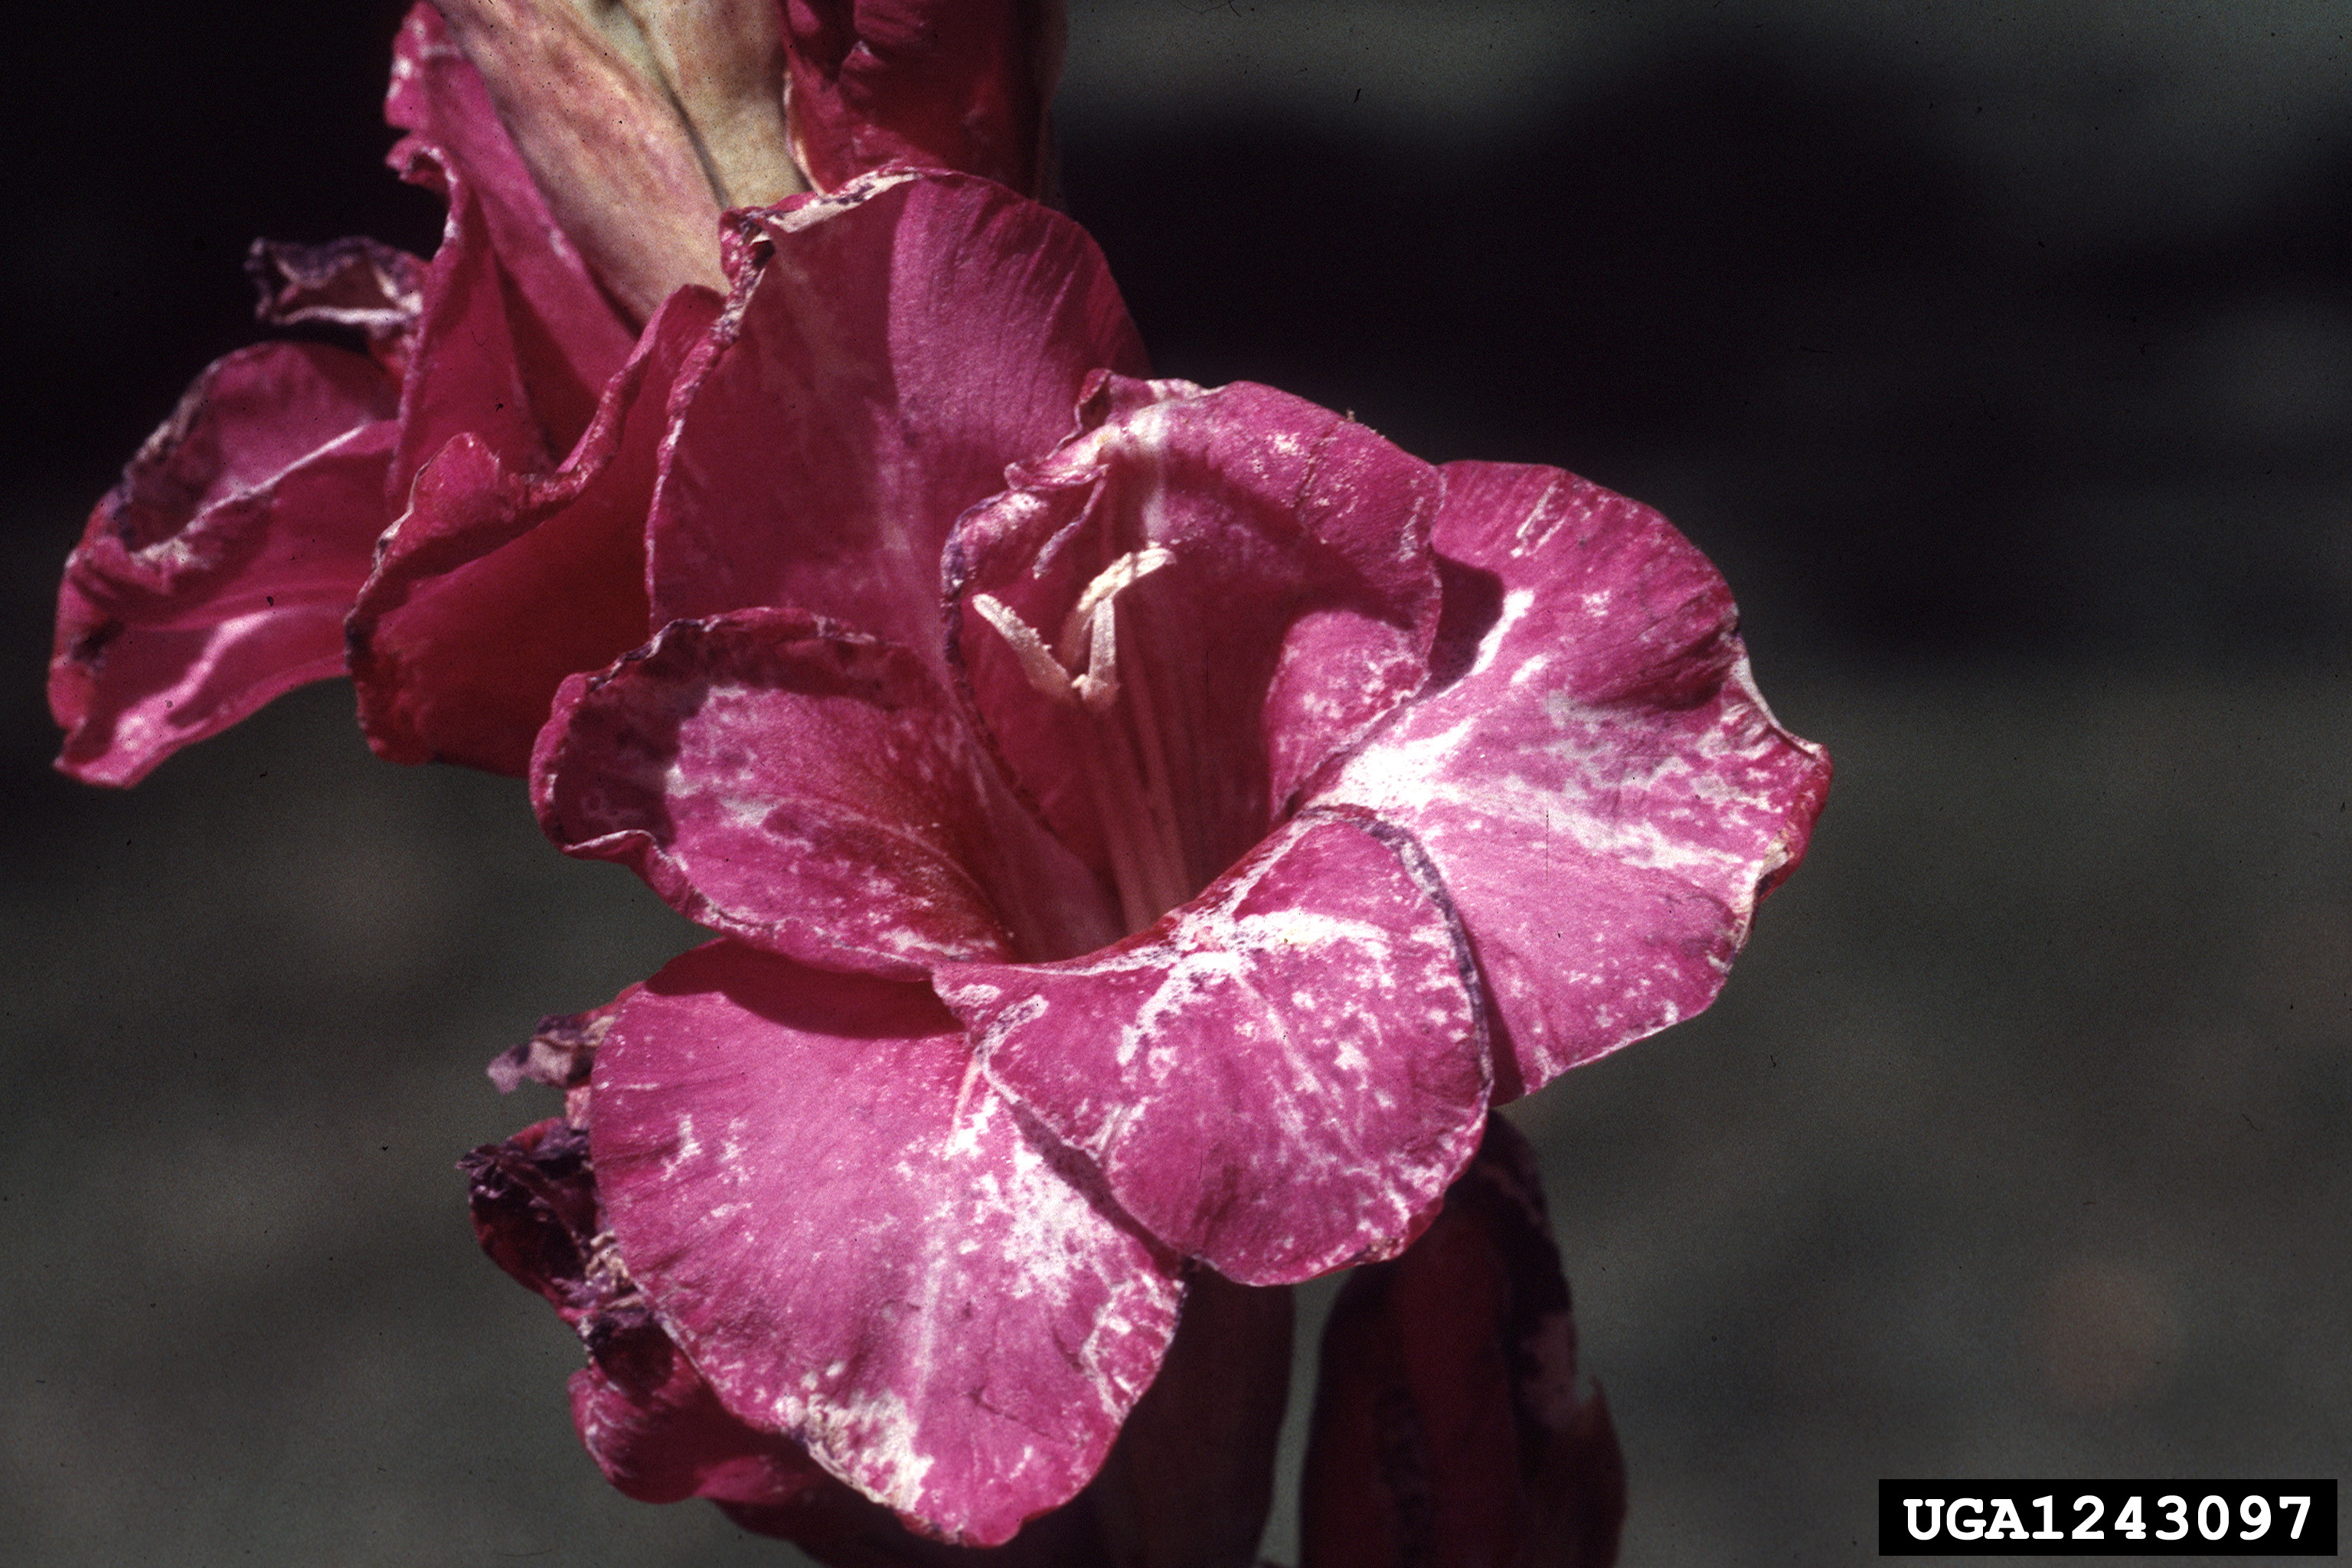 Damaged gladiolus flowers